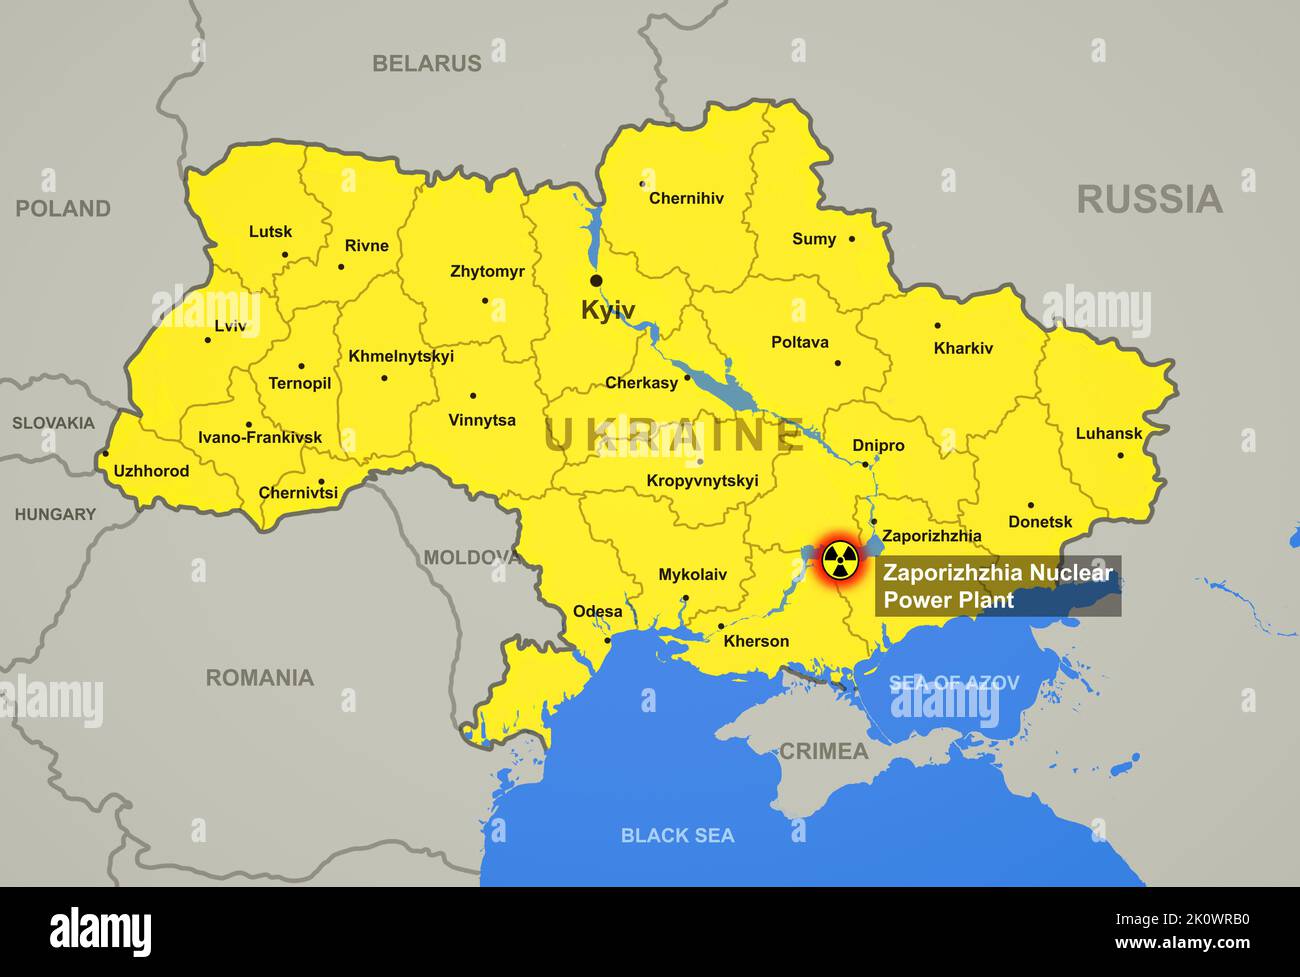 Atomkraftwerk Saporischschja auf der Ukraine Karte mit Städten und Regionen, Hotspot des russisch-ukrainischen Krieges. Grenze der Länder auf der Europakarte. Zaporizhz Stockfoto